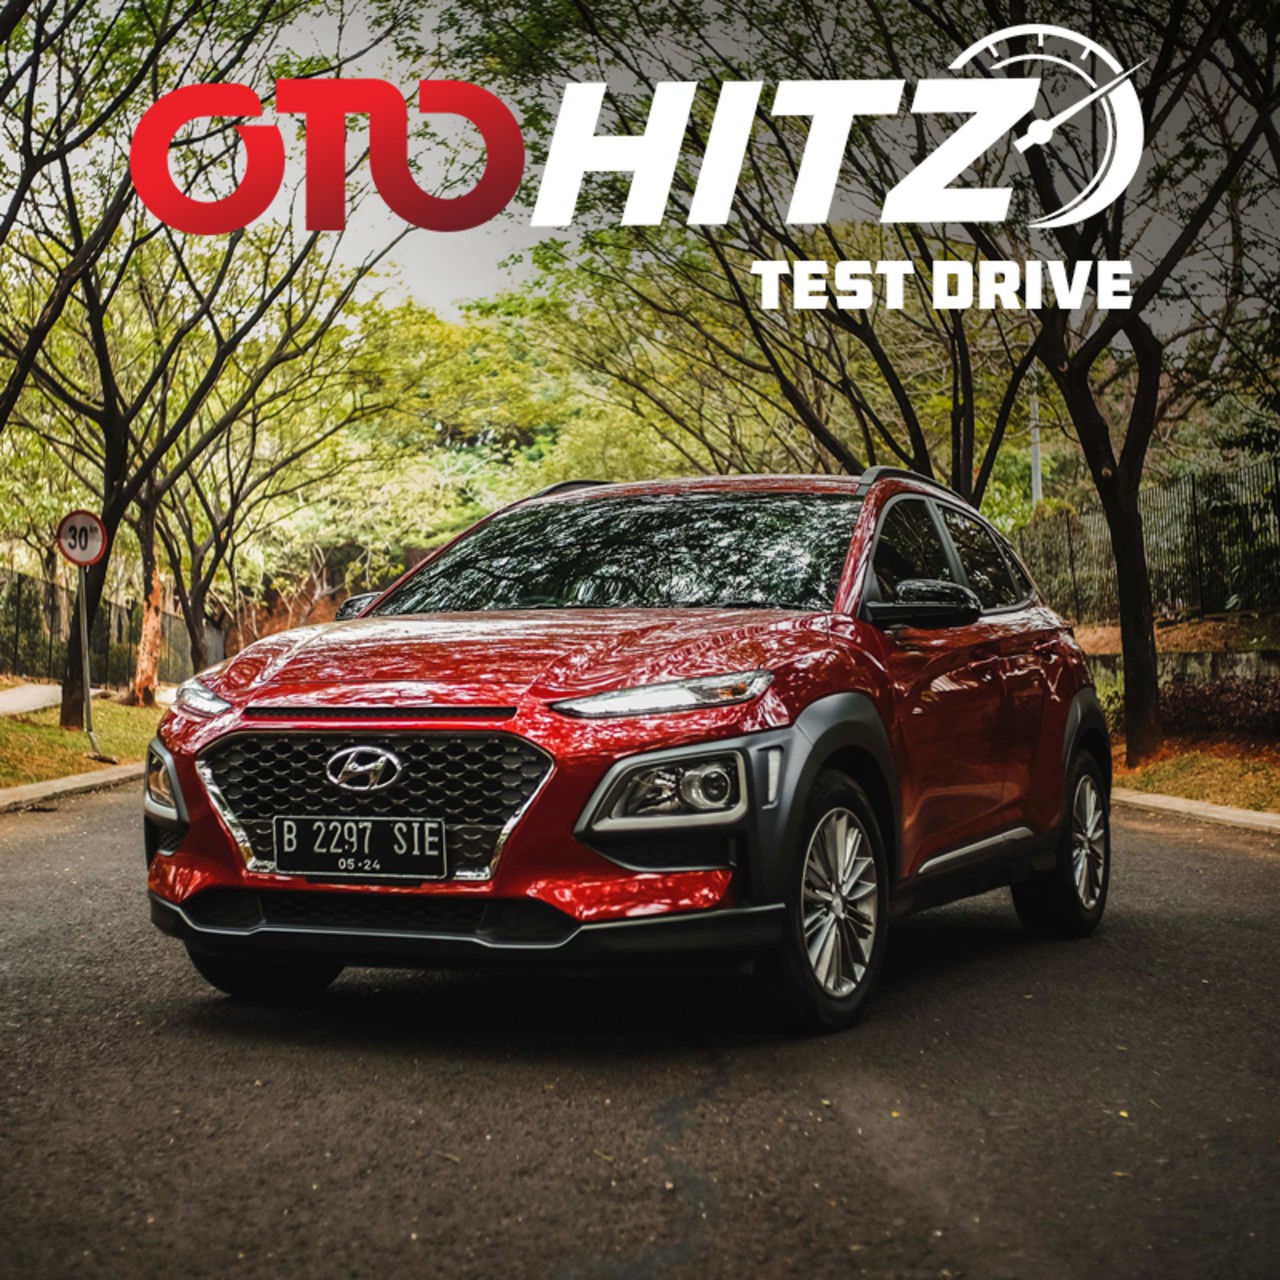 OTOHITZ-Test Drive